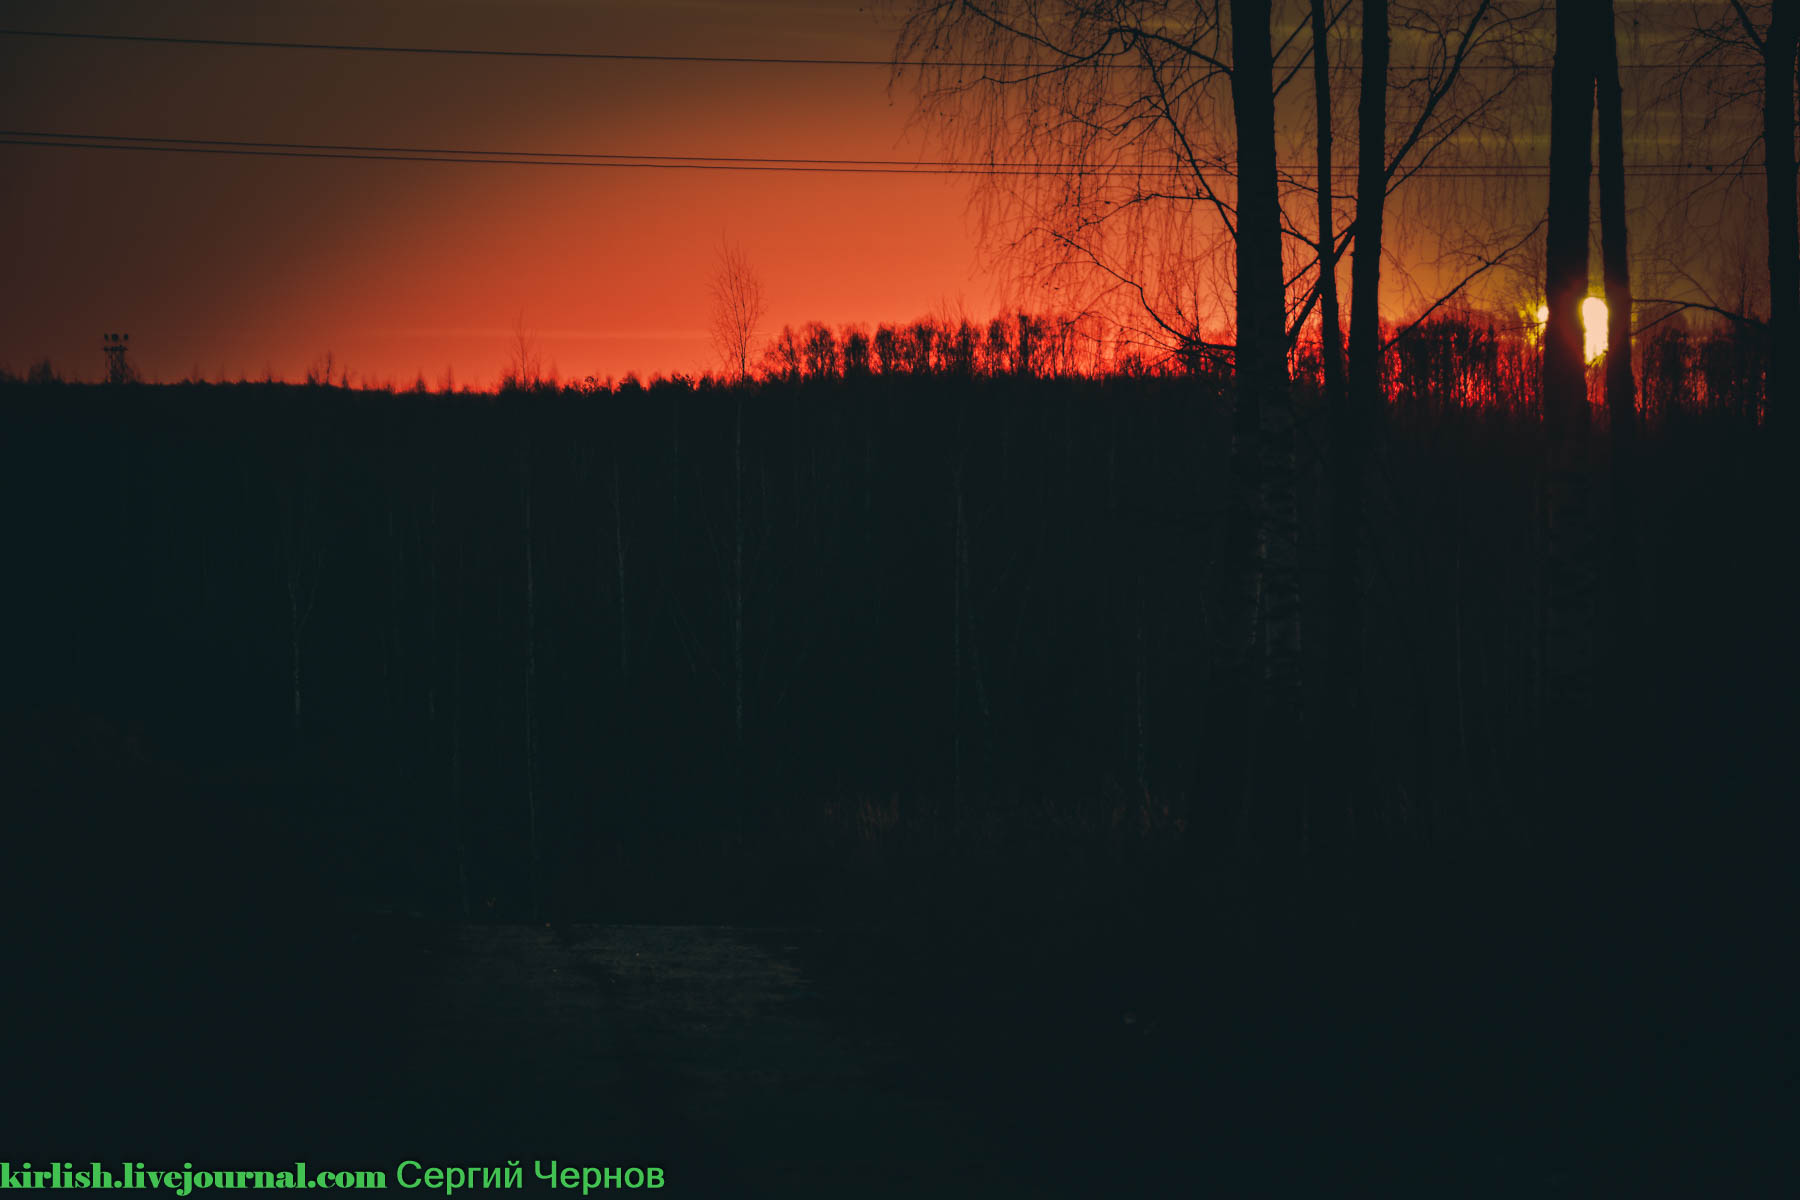 Рассвет цвета крови: запорожский фотограф запечатлел морозное утро над Хортицей (ФОТО)